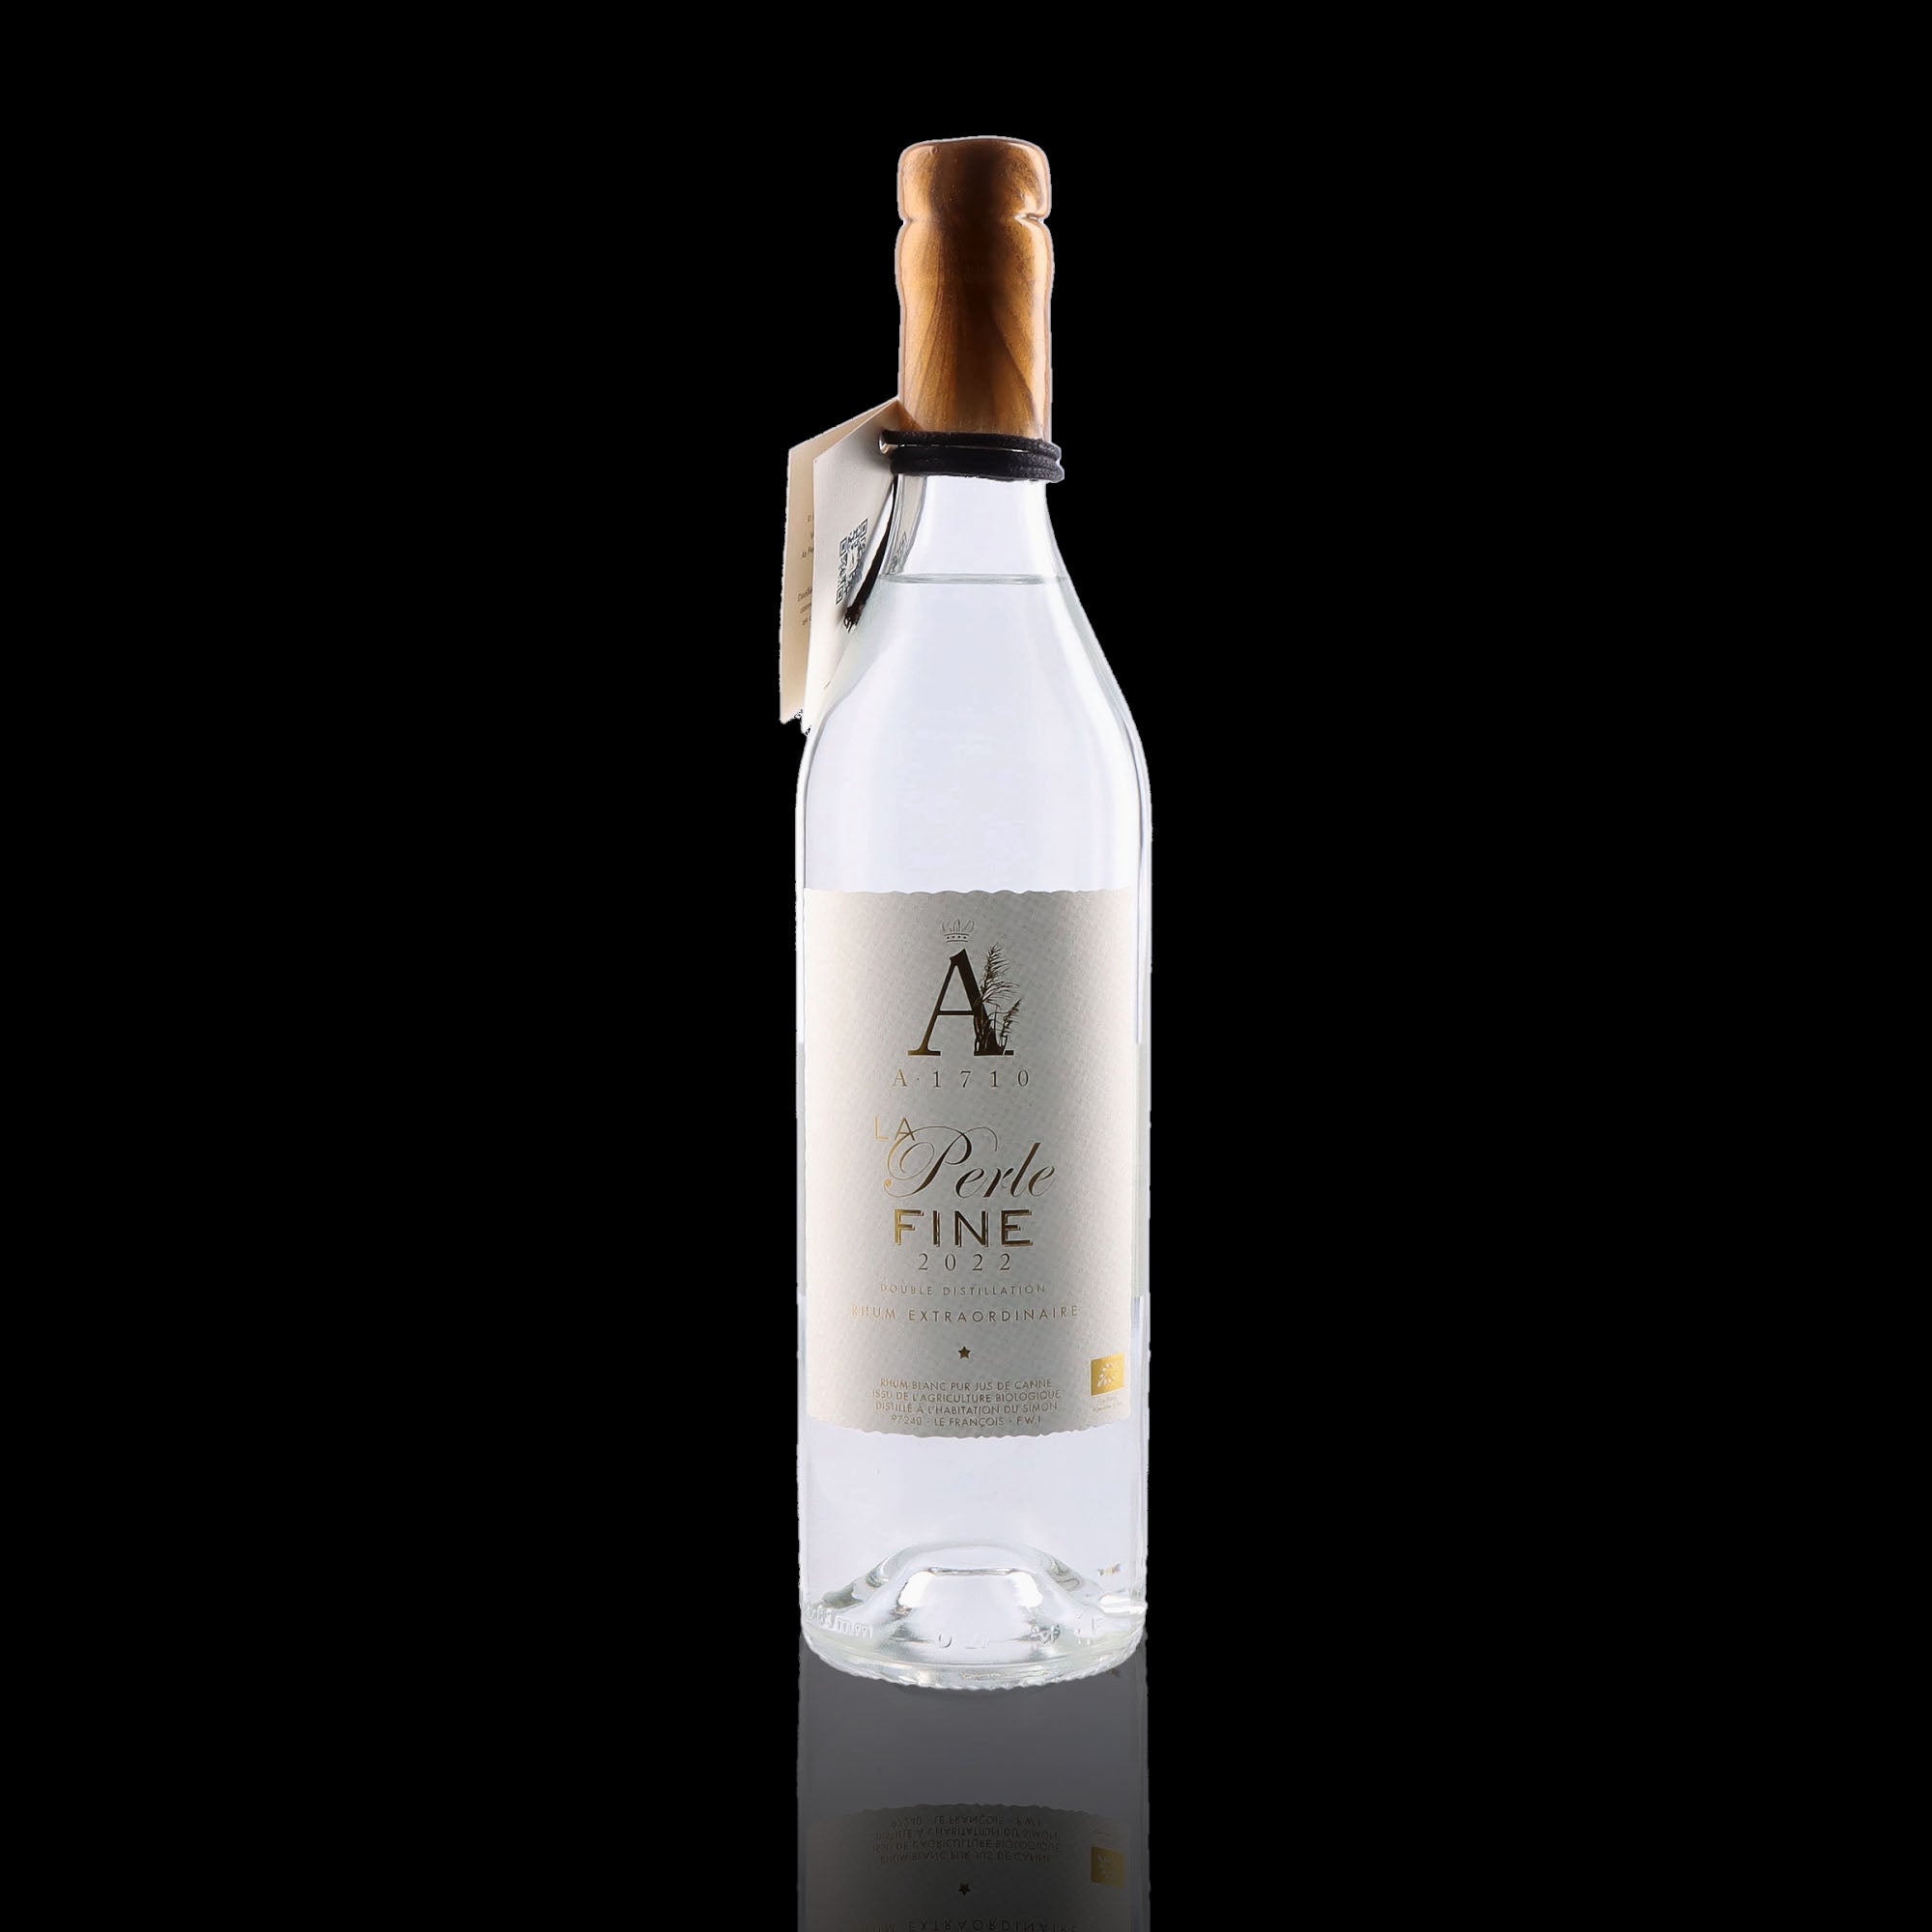 Une bouteille de rhum blanc, de la marque A1710, nommée la perle fine 2022.